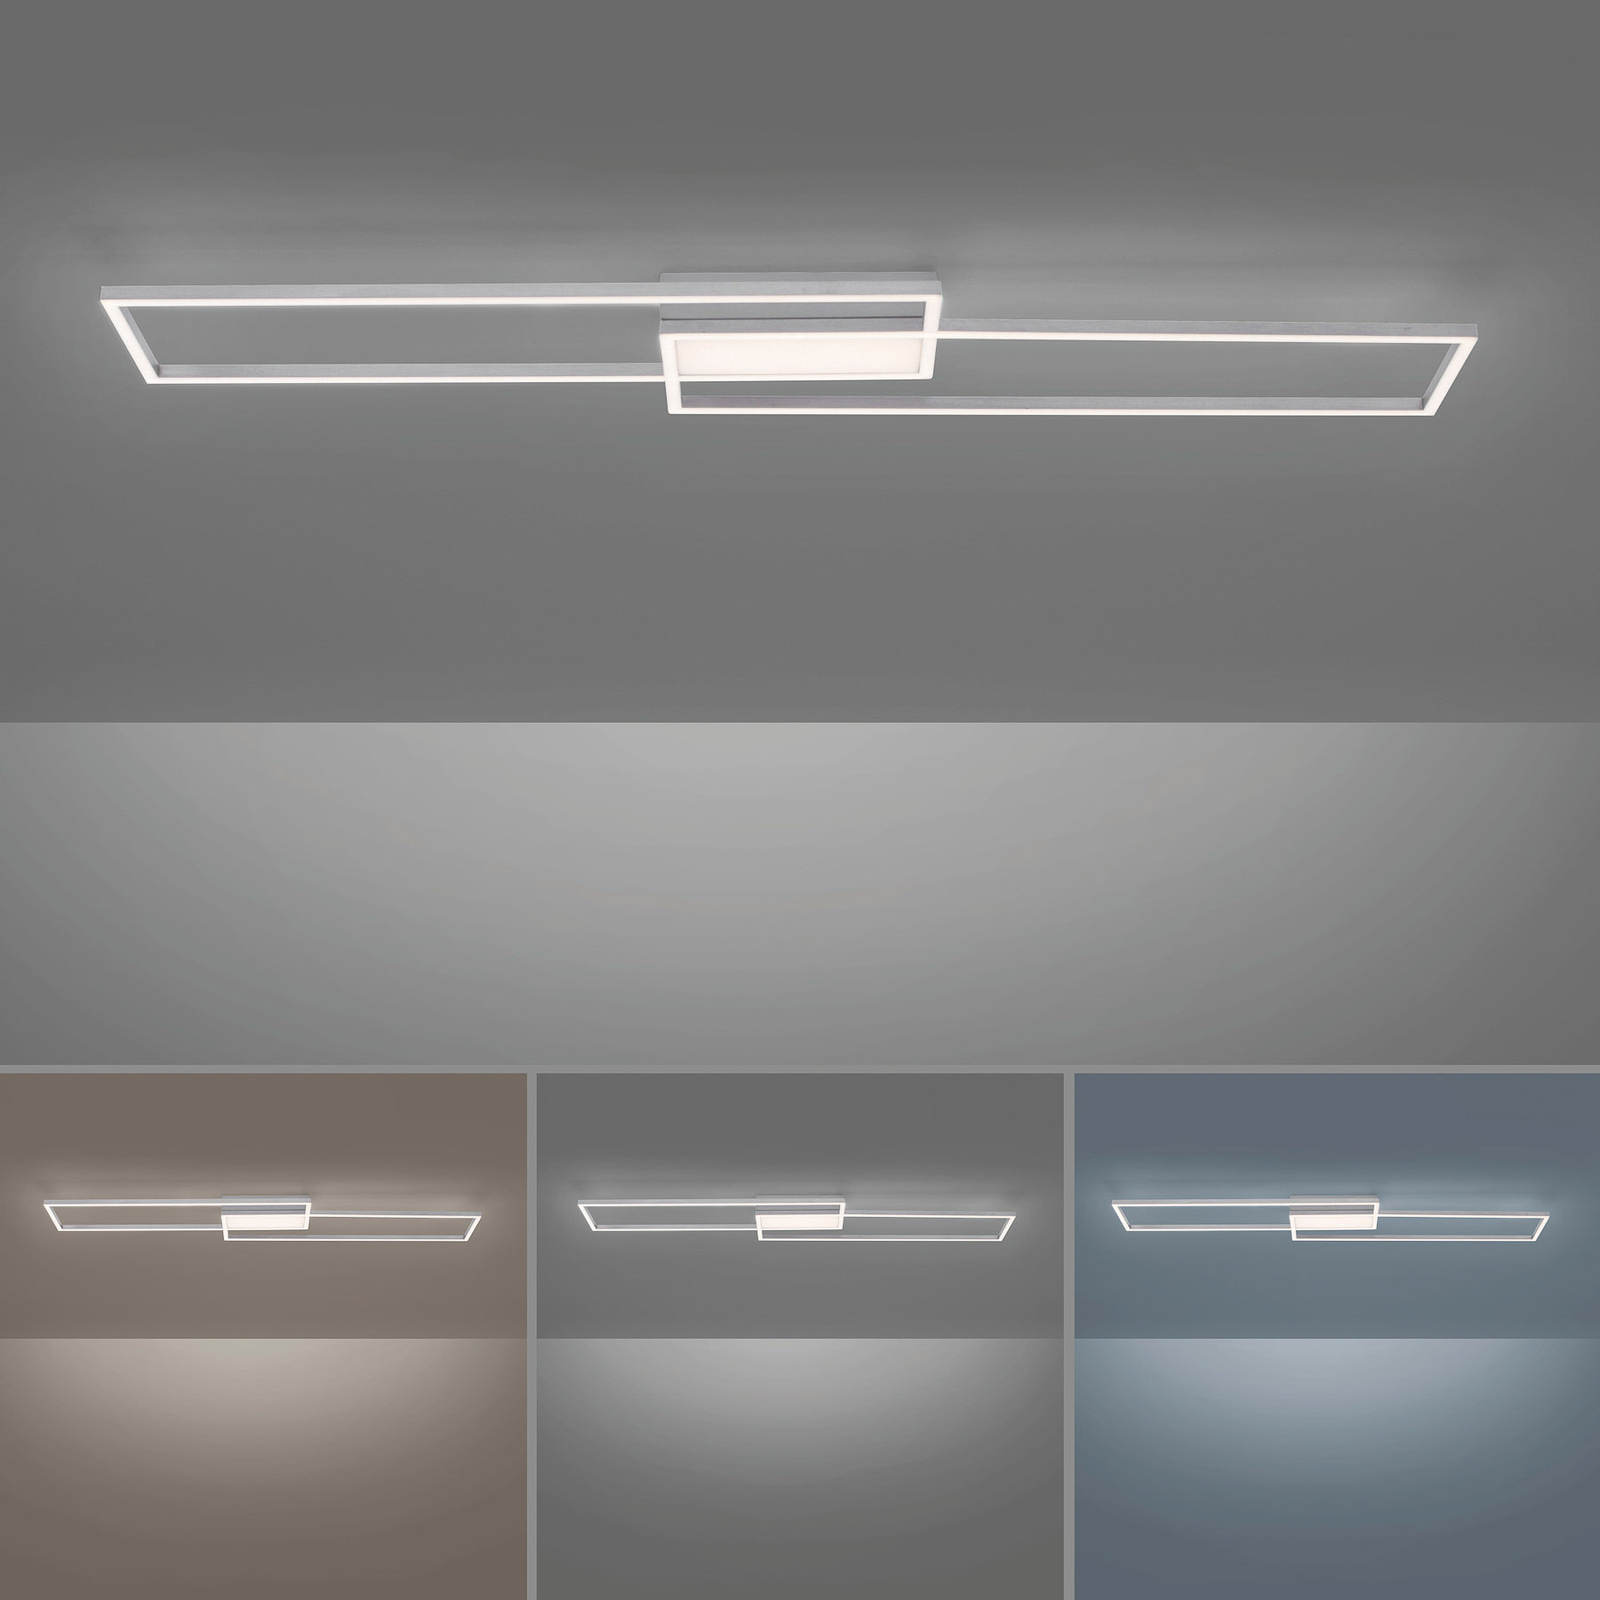 LED stropní svítidlo Asmin, CCT, ocel, 109,5x25,7cm